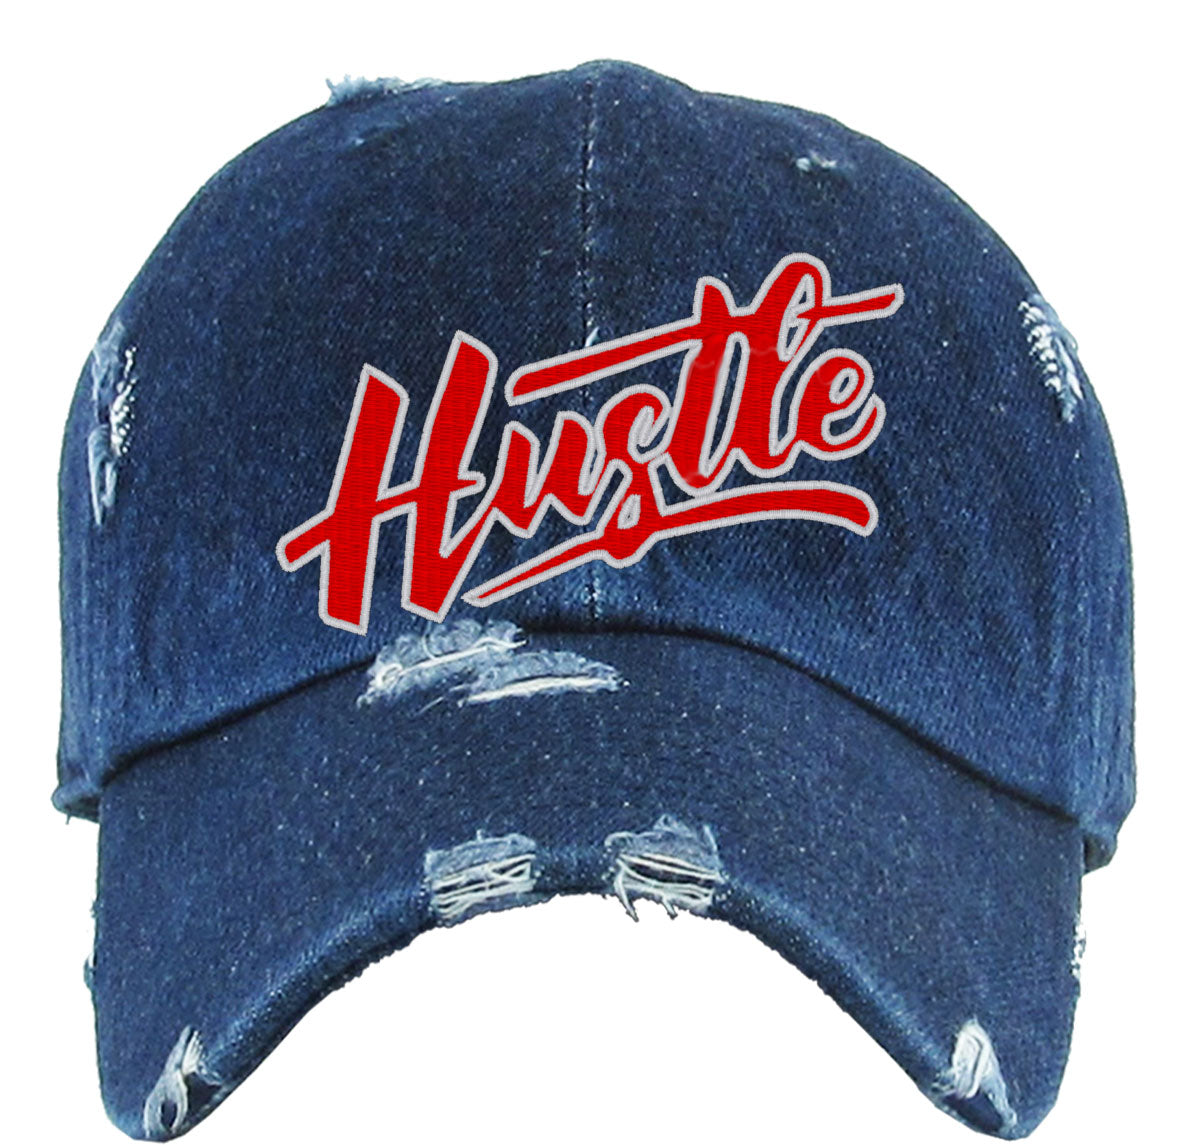 Hustle Vintage Baseball Cap